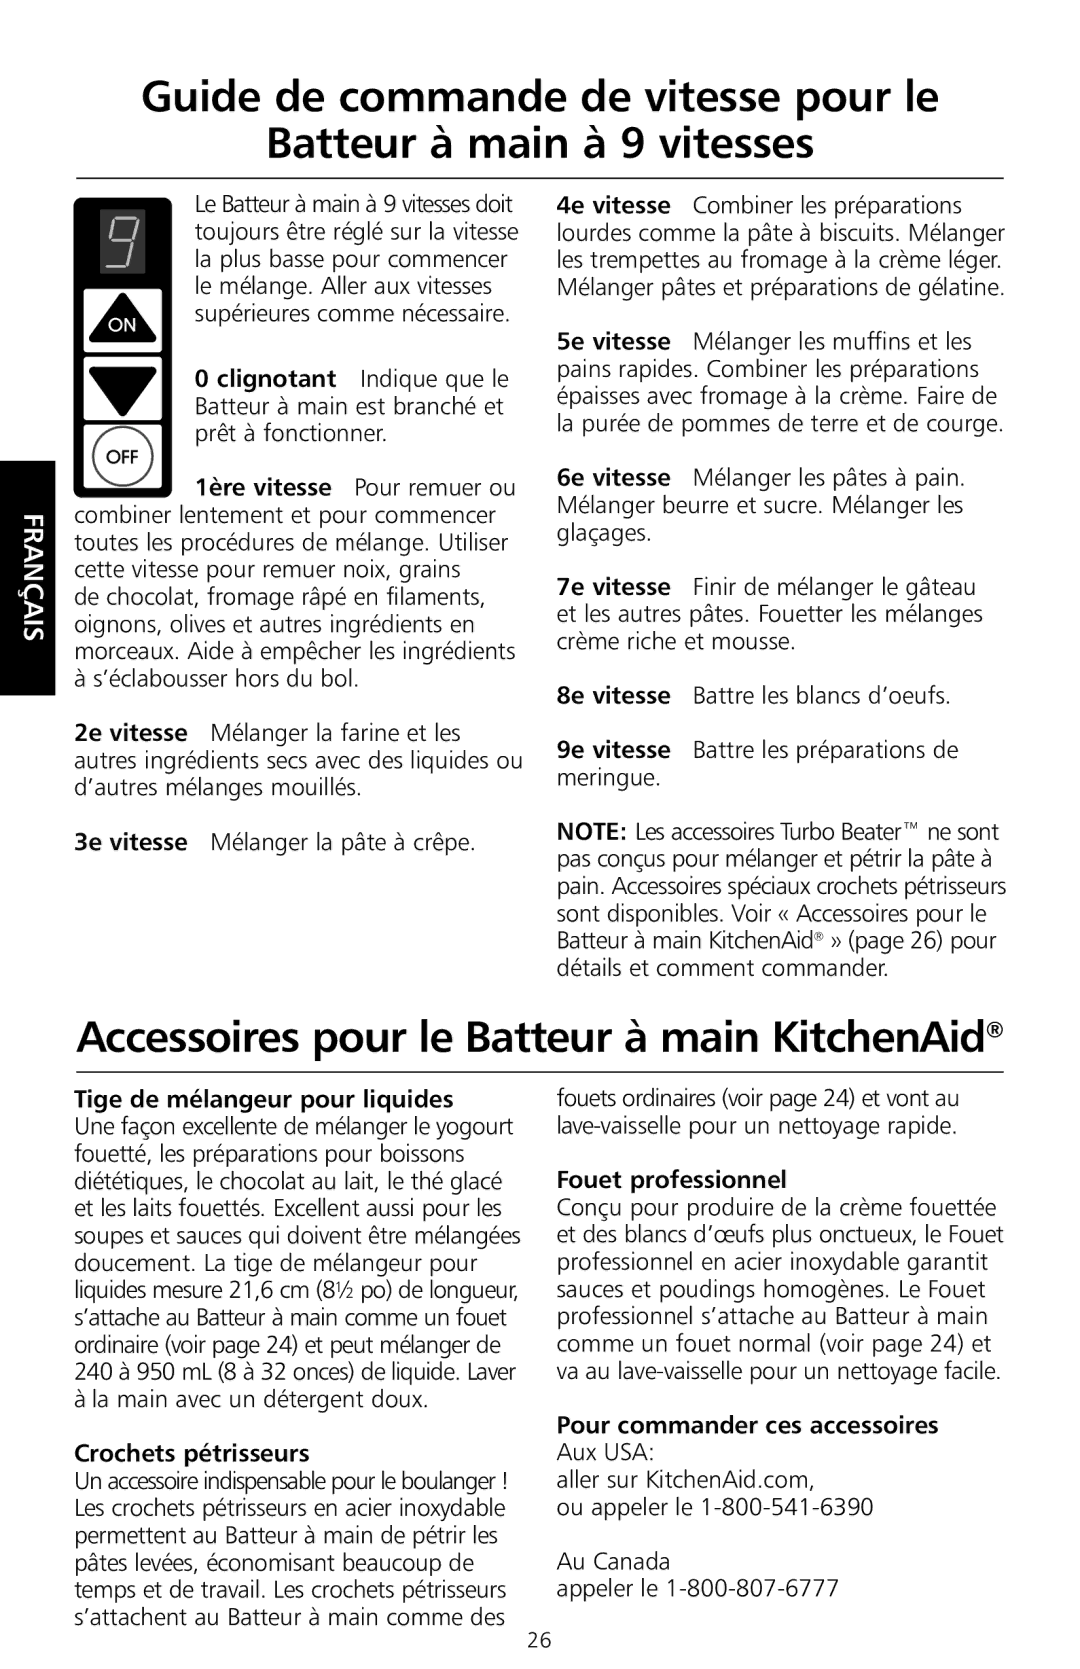 KitchenAid KHM9 manual Accessoires pour le Batteur à main KitchenAid, Tige de mélangeur pour liquides, Crochets pétrisseurs 